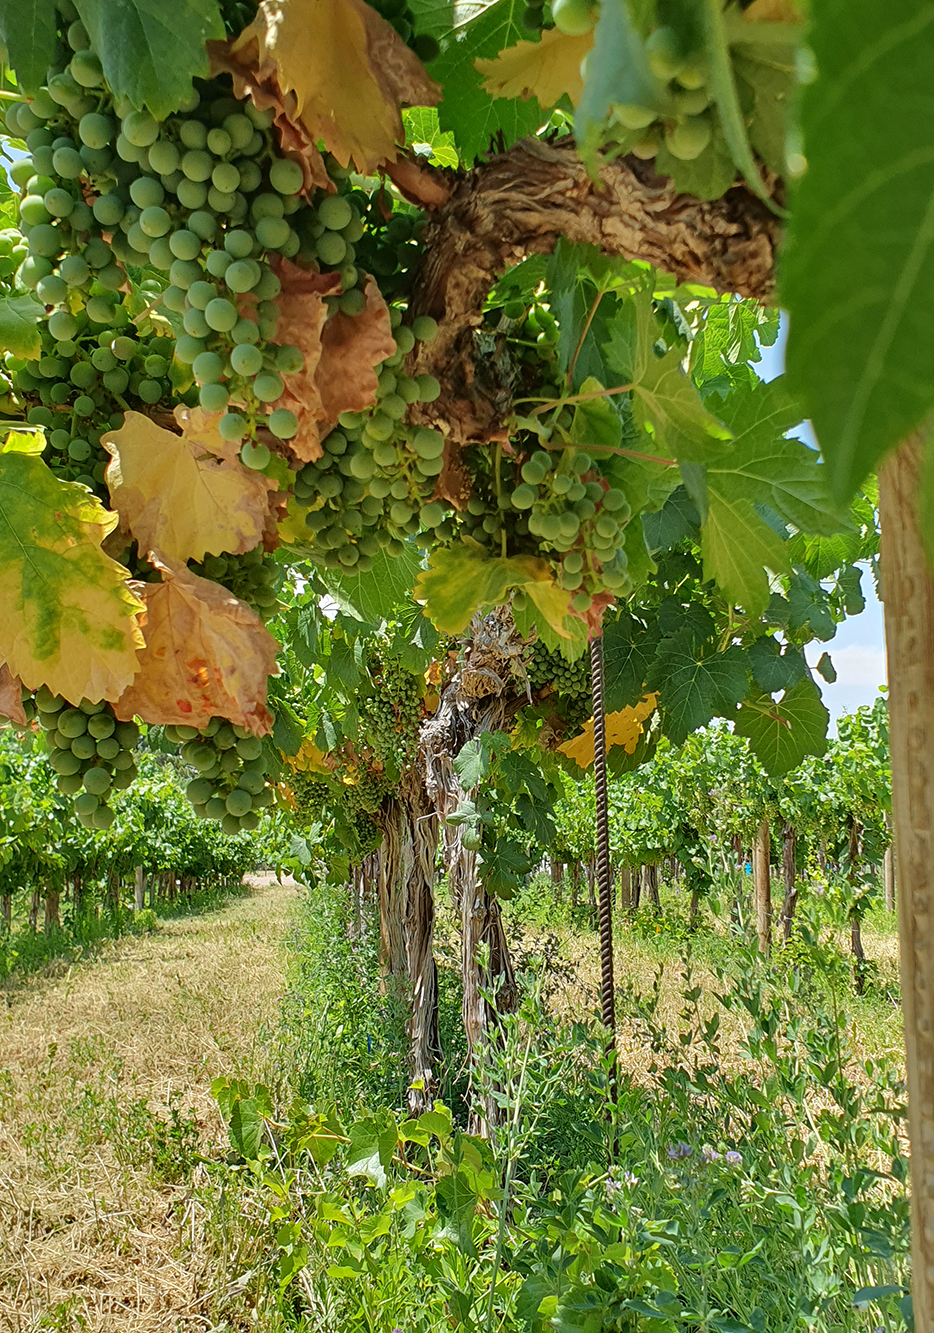 Image of grape tree in field